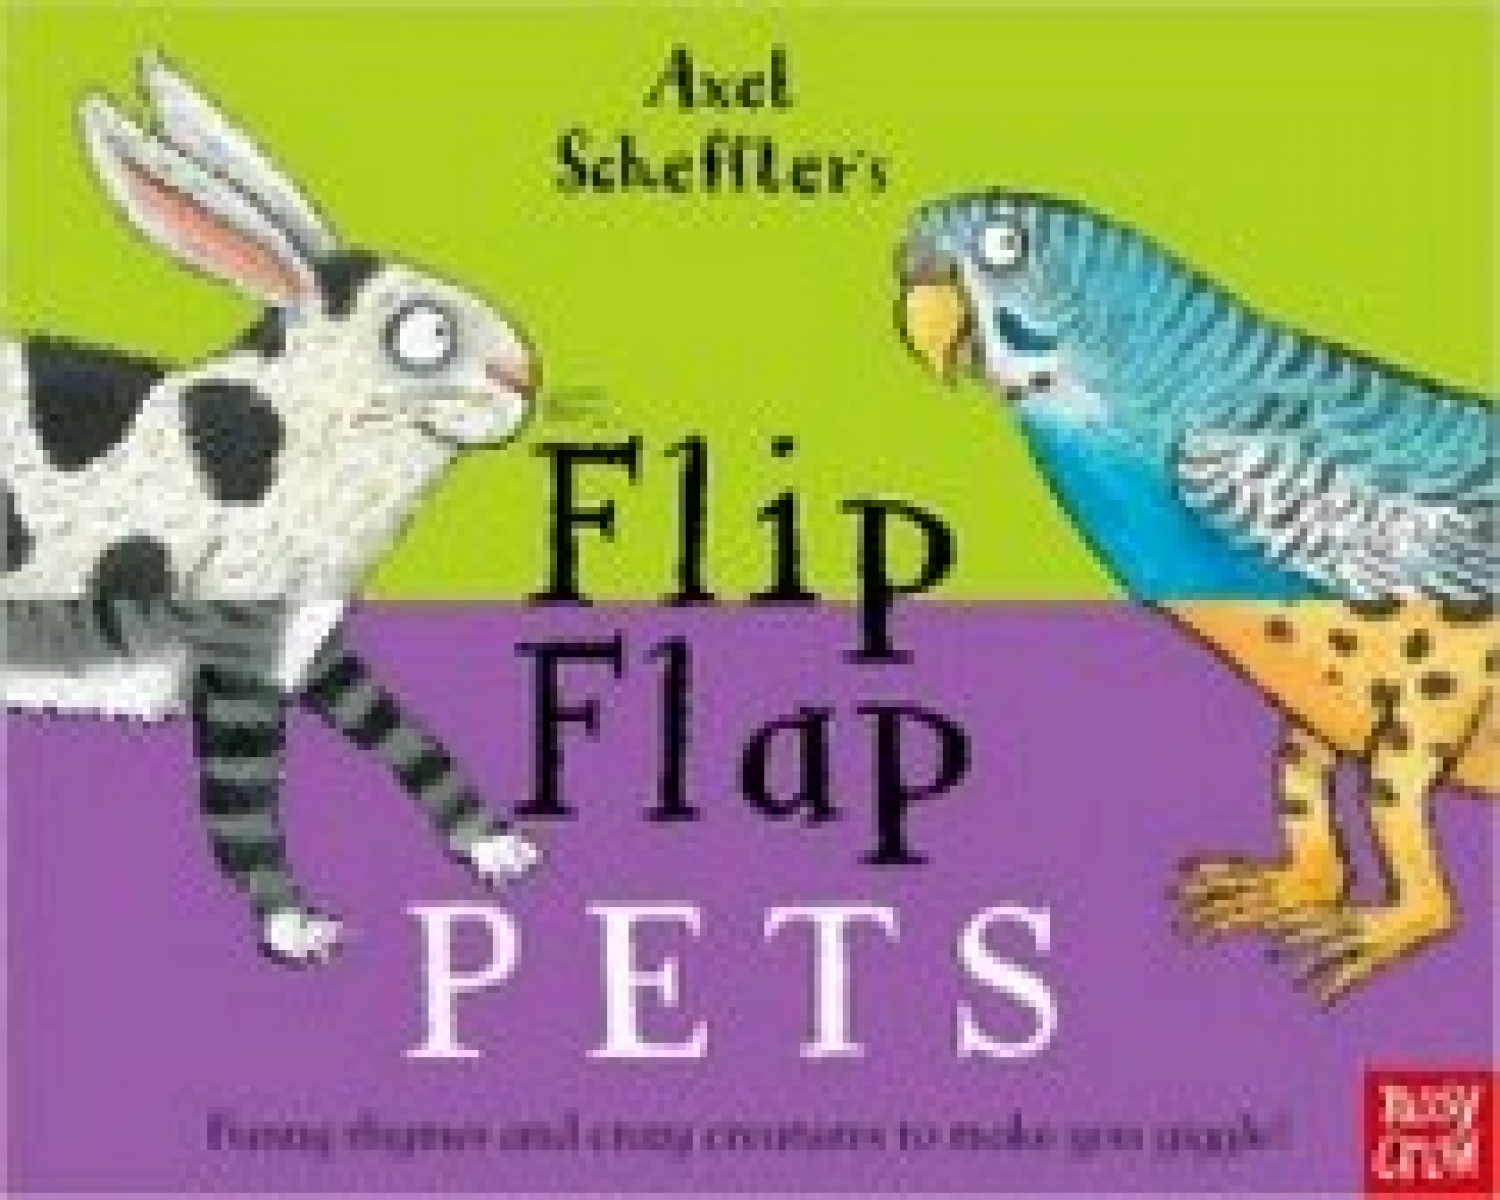 Scheffler Axel Axel Scheffler's Flip Flap Pets 